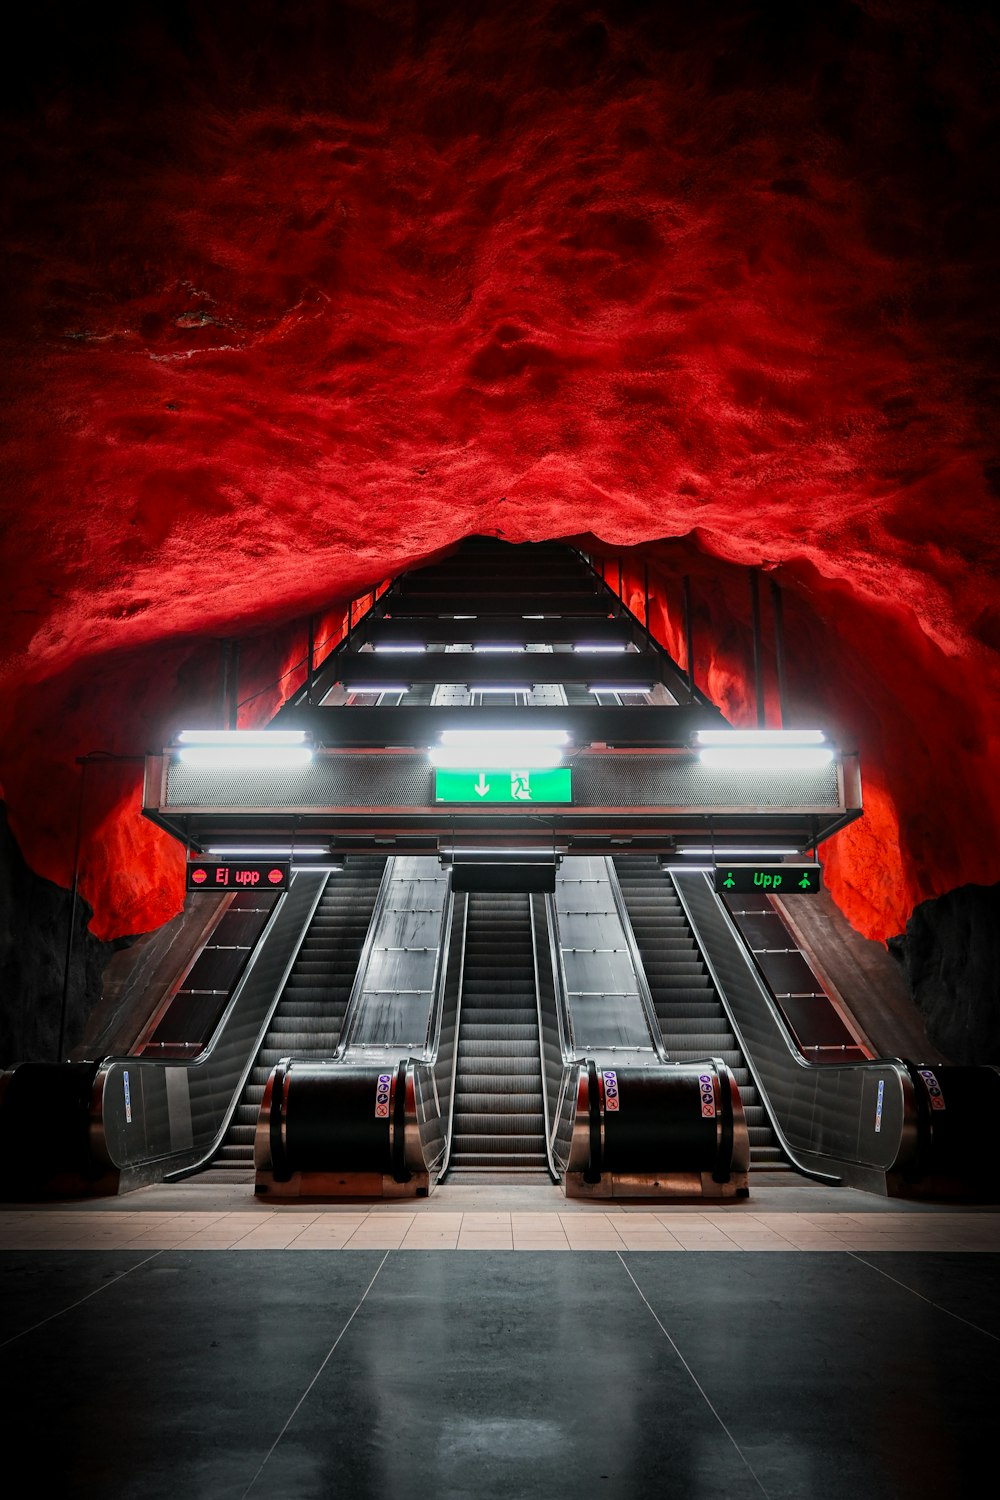 eine unterirdische U-Bahn-Station mit Rolltreppen und roten Wänden